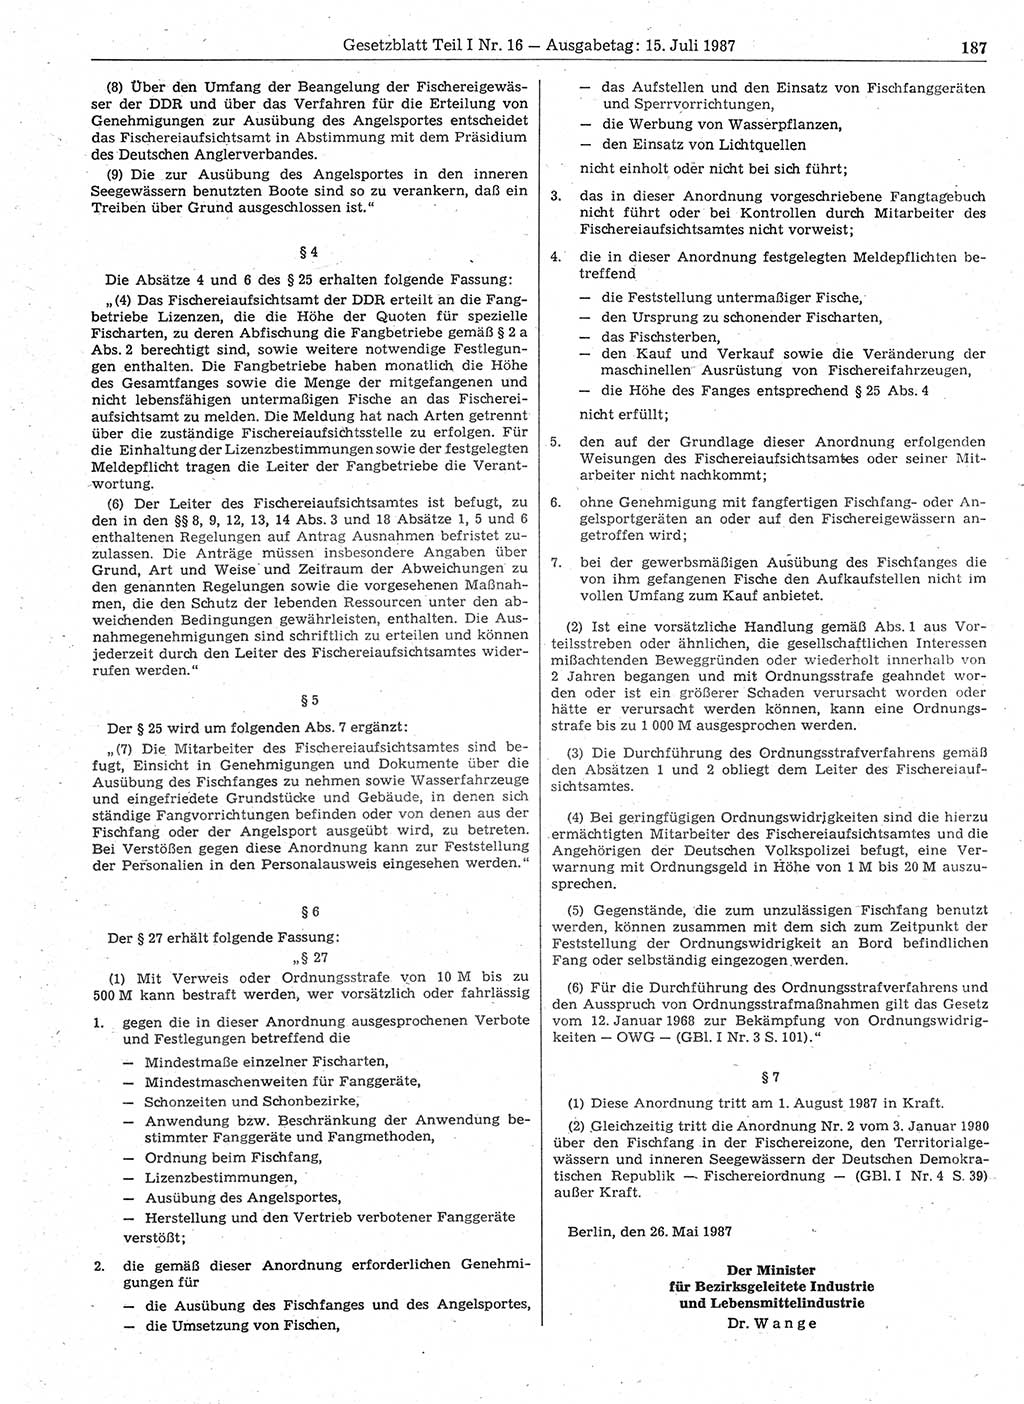 Gesetzblatt (GBl.) der Deutschen Demokratischen Republik (DDR) Teil Ⅰ 1987, Seite 187 (GBl. DDR Ⅰ 1987, S. 187)